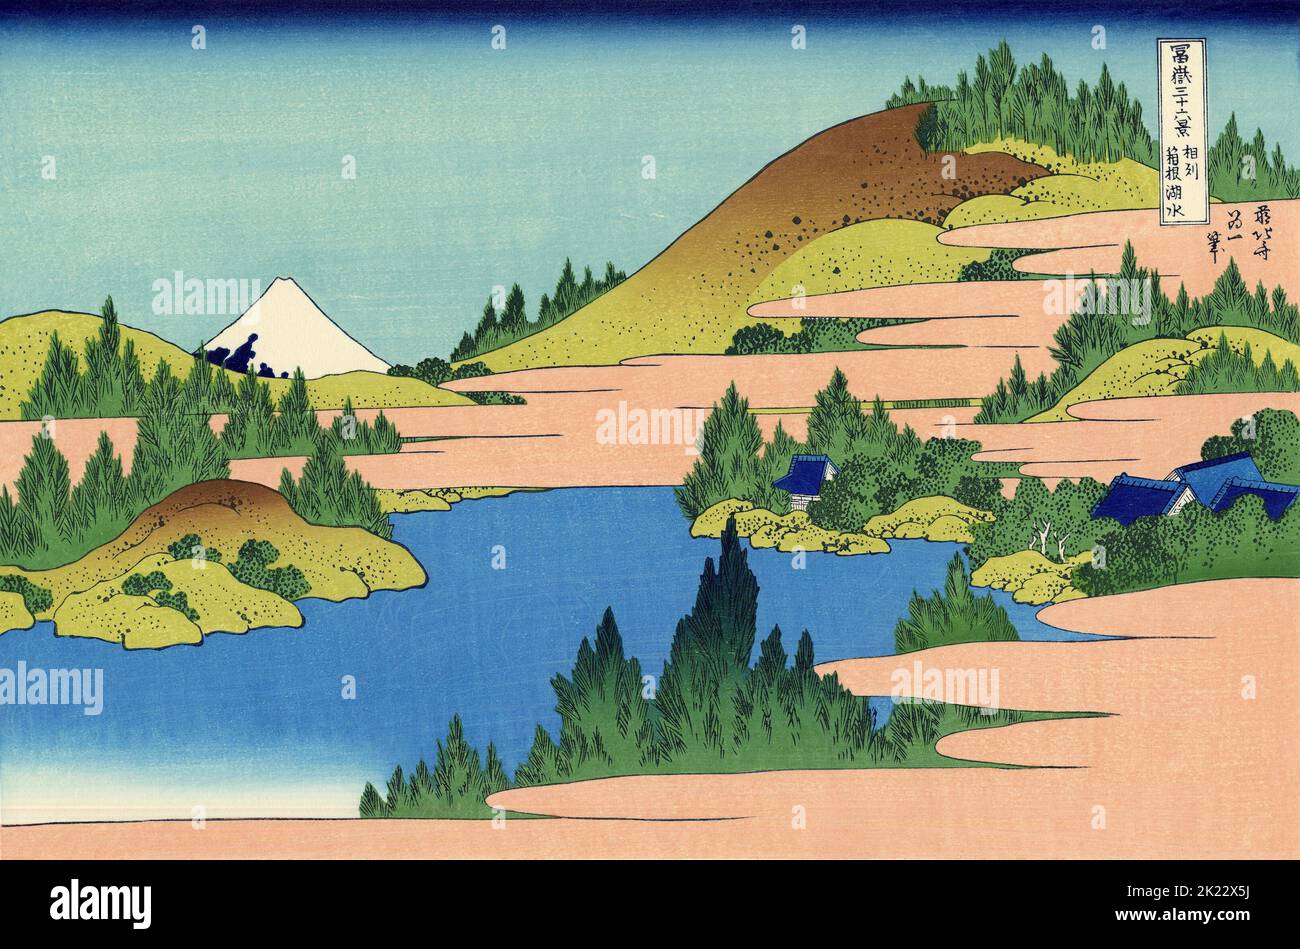 Japón: “Lago Hakone en la provincia de Sagami”. Impresión en bloque de madera ukiyo-e de la serie «Treinta y seis vistas del monte Fuji» de Katsushika Hokusai (31 de octubre de 1760 - 10 de mayo de 1849), 1830. «Treinta y seis vistas del monte Fuji» es una serie «ukiyo-e» de grabados en madera del artista japonés Katsushika Hokusai. La serie muestra el Monte Fuji en diferentes estaciones y condiciones climáticas desde diversos lugares y distancias. En realidad consiste en 46 impresiones creadas entre 1826 y 1833. Los primeros 36 fueron incluidos en la publicación original y, debido a su popularidad, se agregaron 10 más. Foto de stock